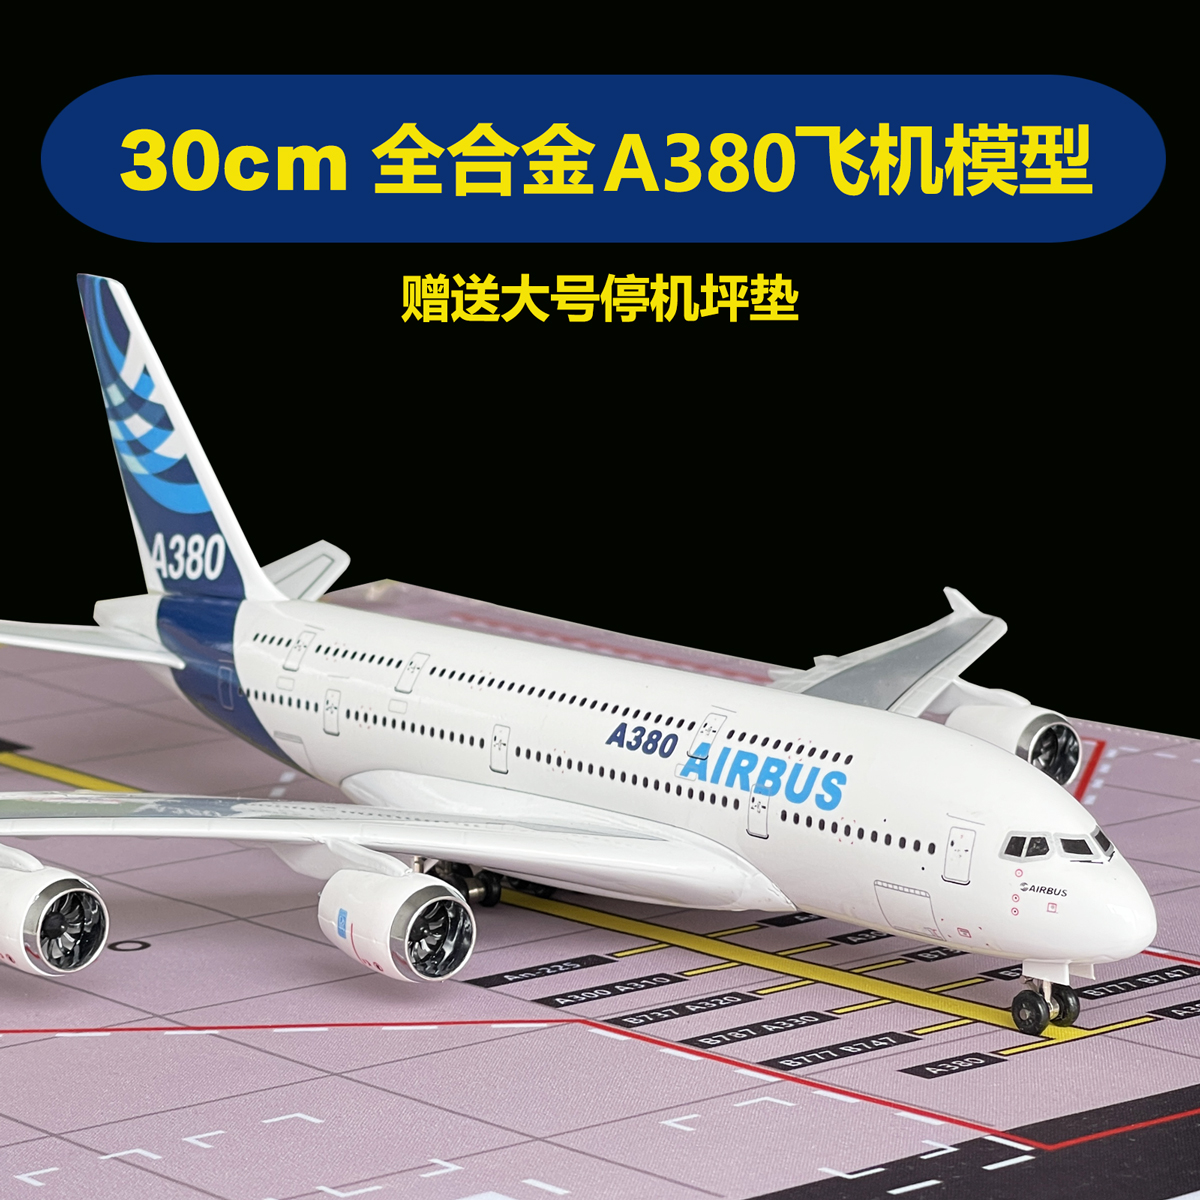 30CM全合金A380飞机模型原型机1:250比例飞机收藏儿童生日礼物